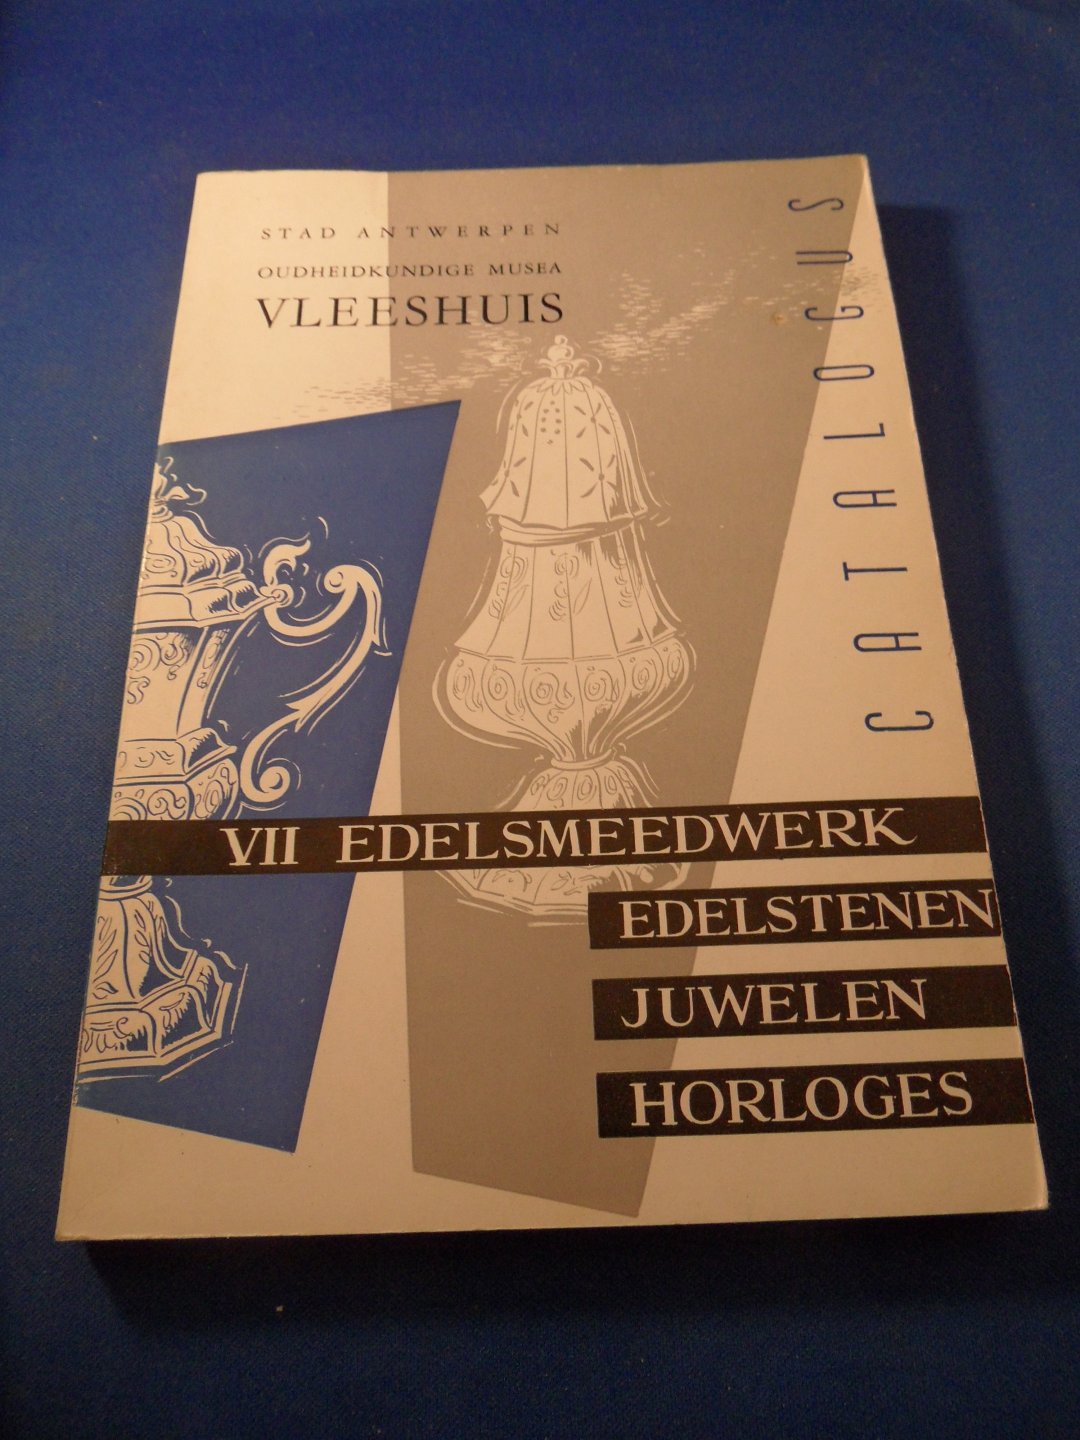 Oudheidkundige Musea Stad Antwerpen - Catalogus VII, Edelsmeedwerk. Oudheidkundig museum Vleeshuis